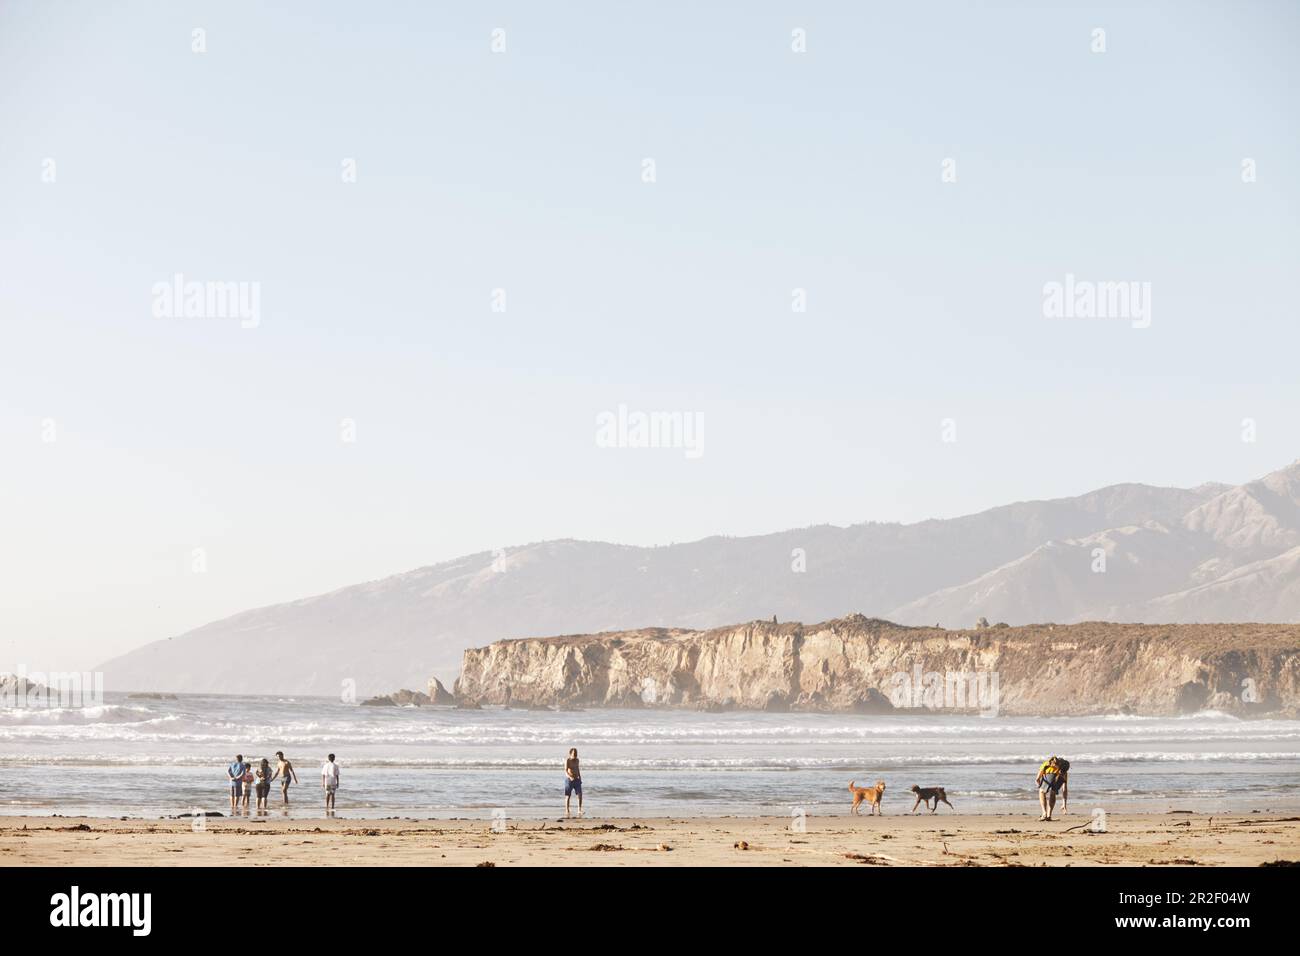 Caminantes de playa, bañistas y perros en la playa en Big Sur. California, Estados Unidos Foto de stock